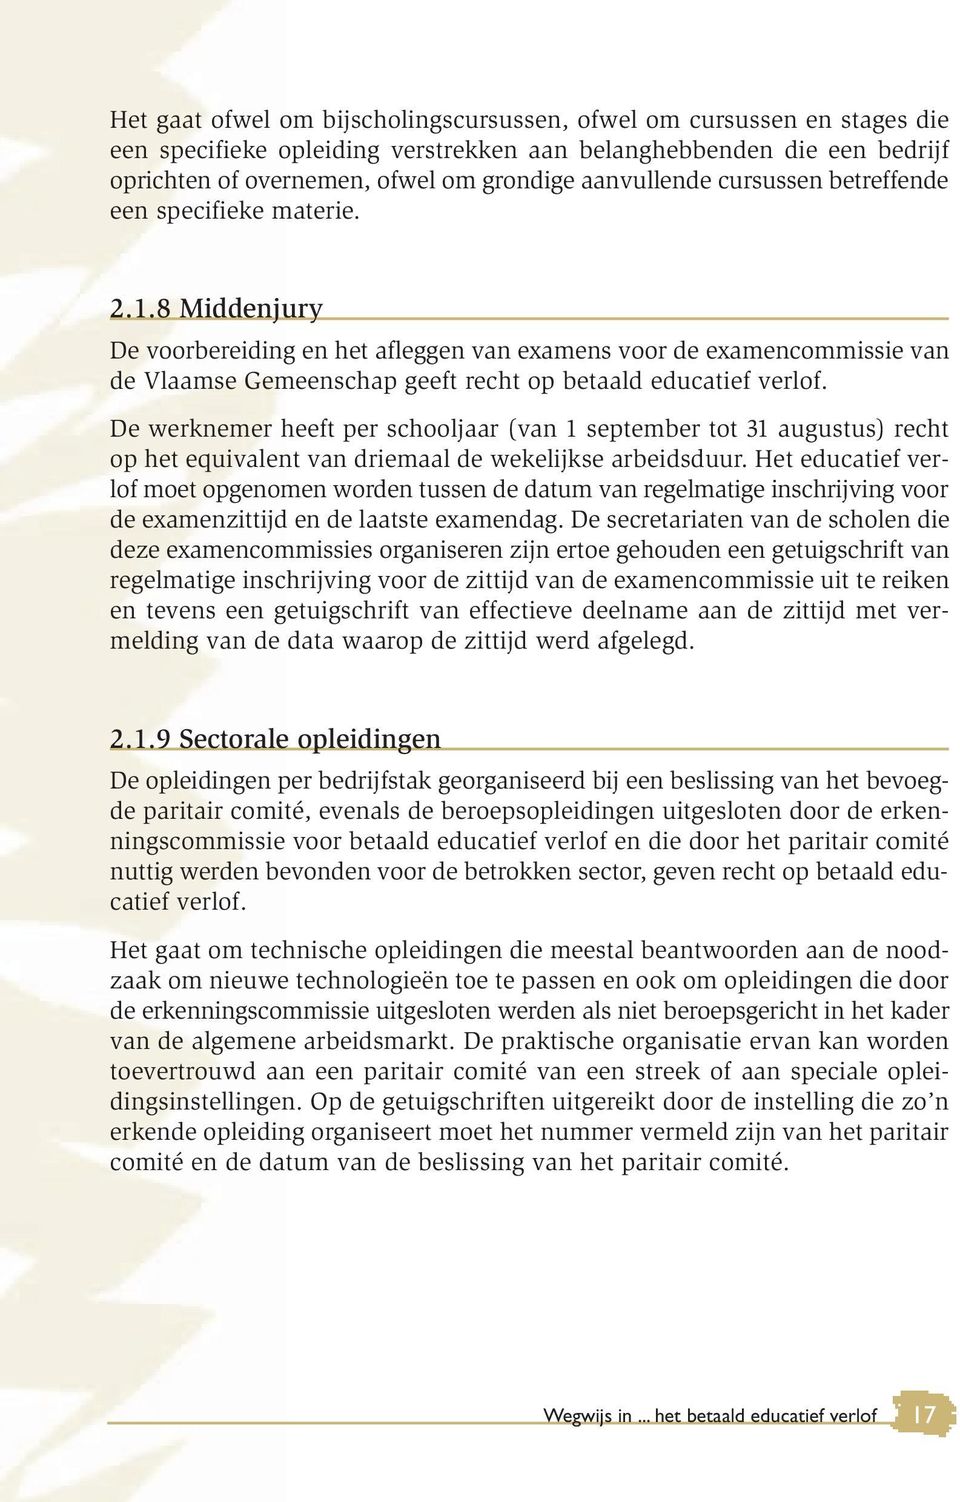 8 Middenjury De voorbereiding en het afleggen van examens voor de examencommissie van de Vlaamse Gemeenschap geeft recht op betaald educatief verlof.